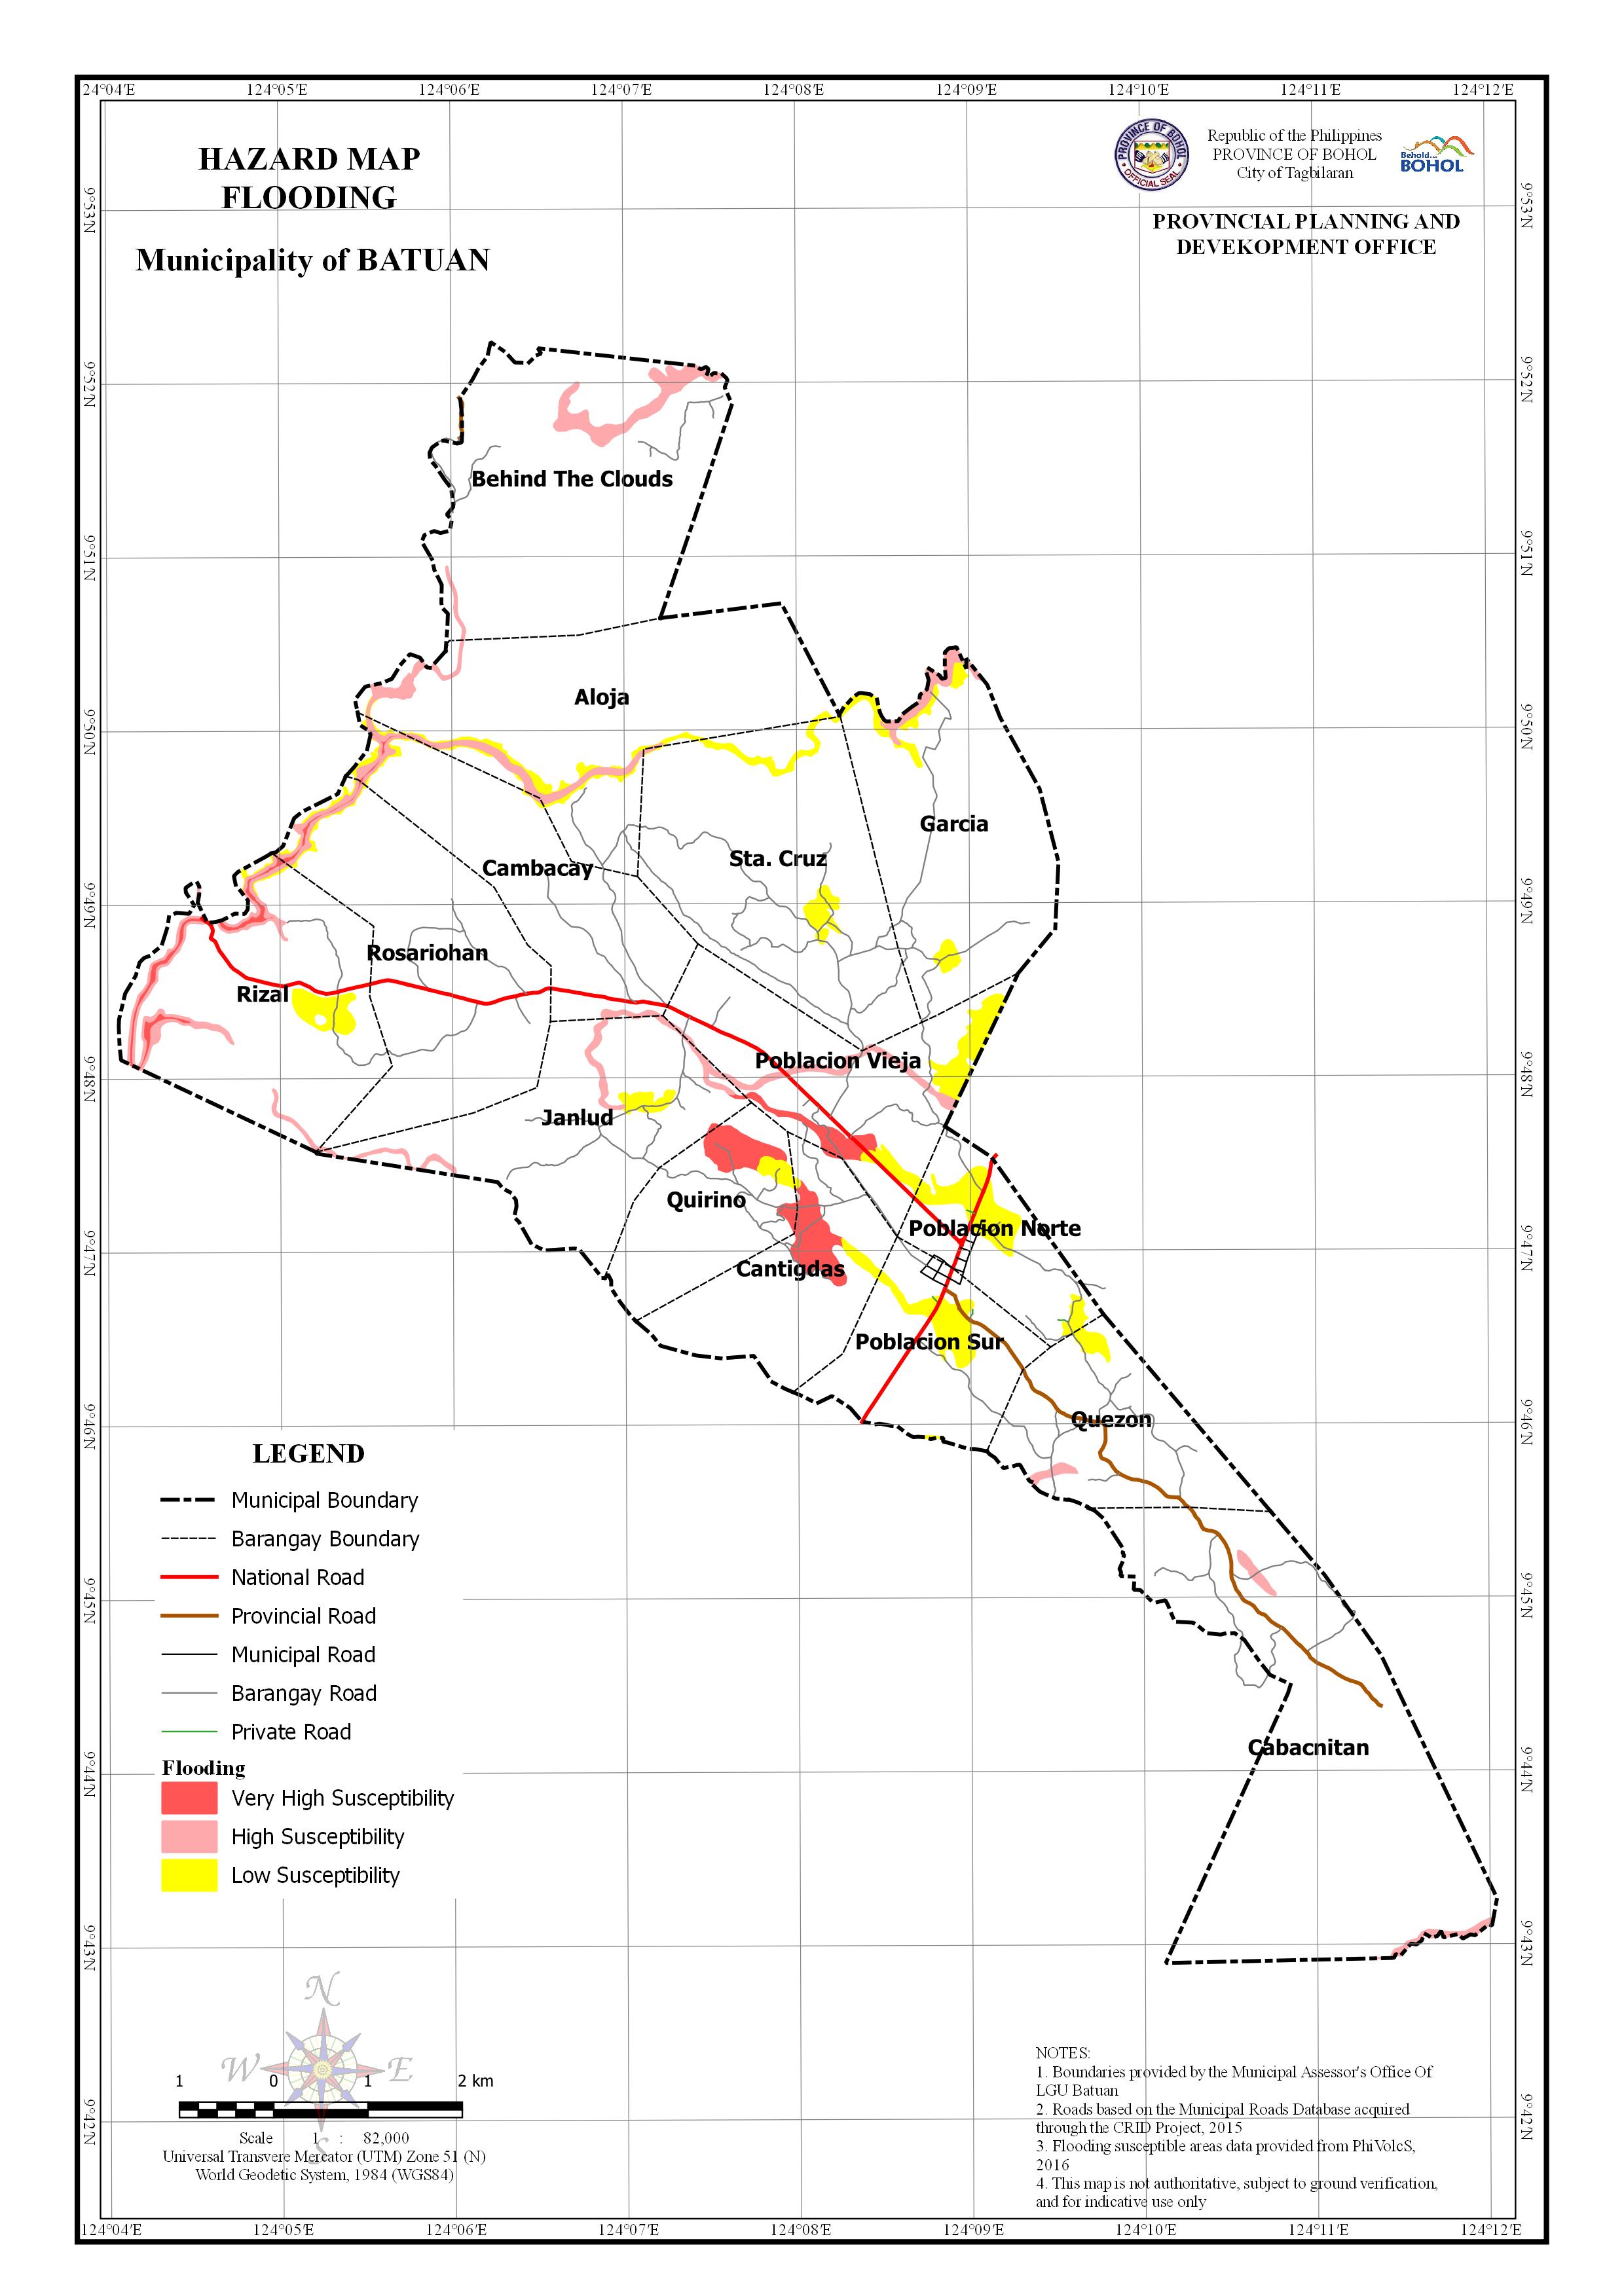 Municipality of Batuan Flooding Map